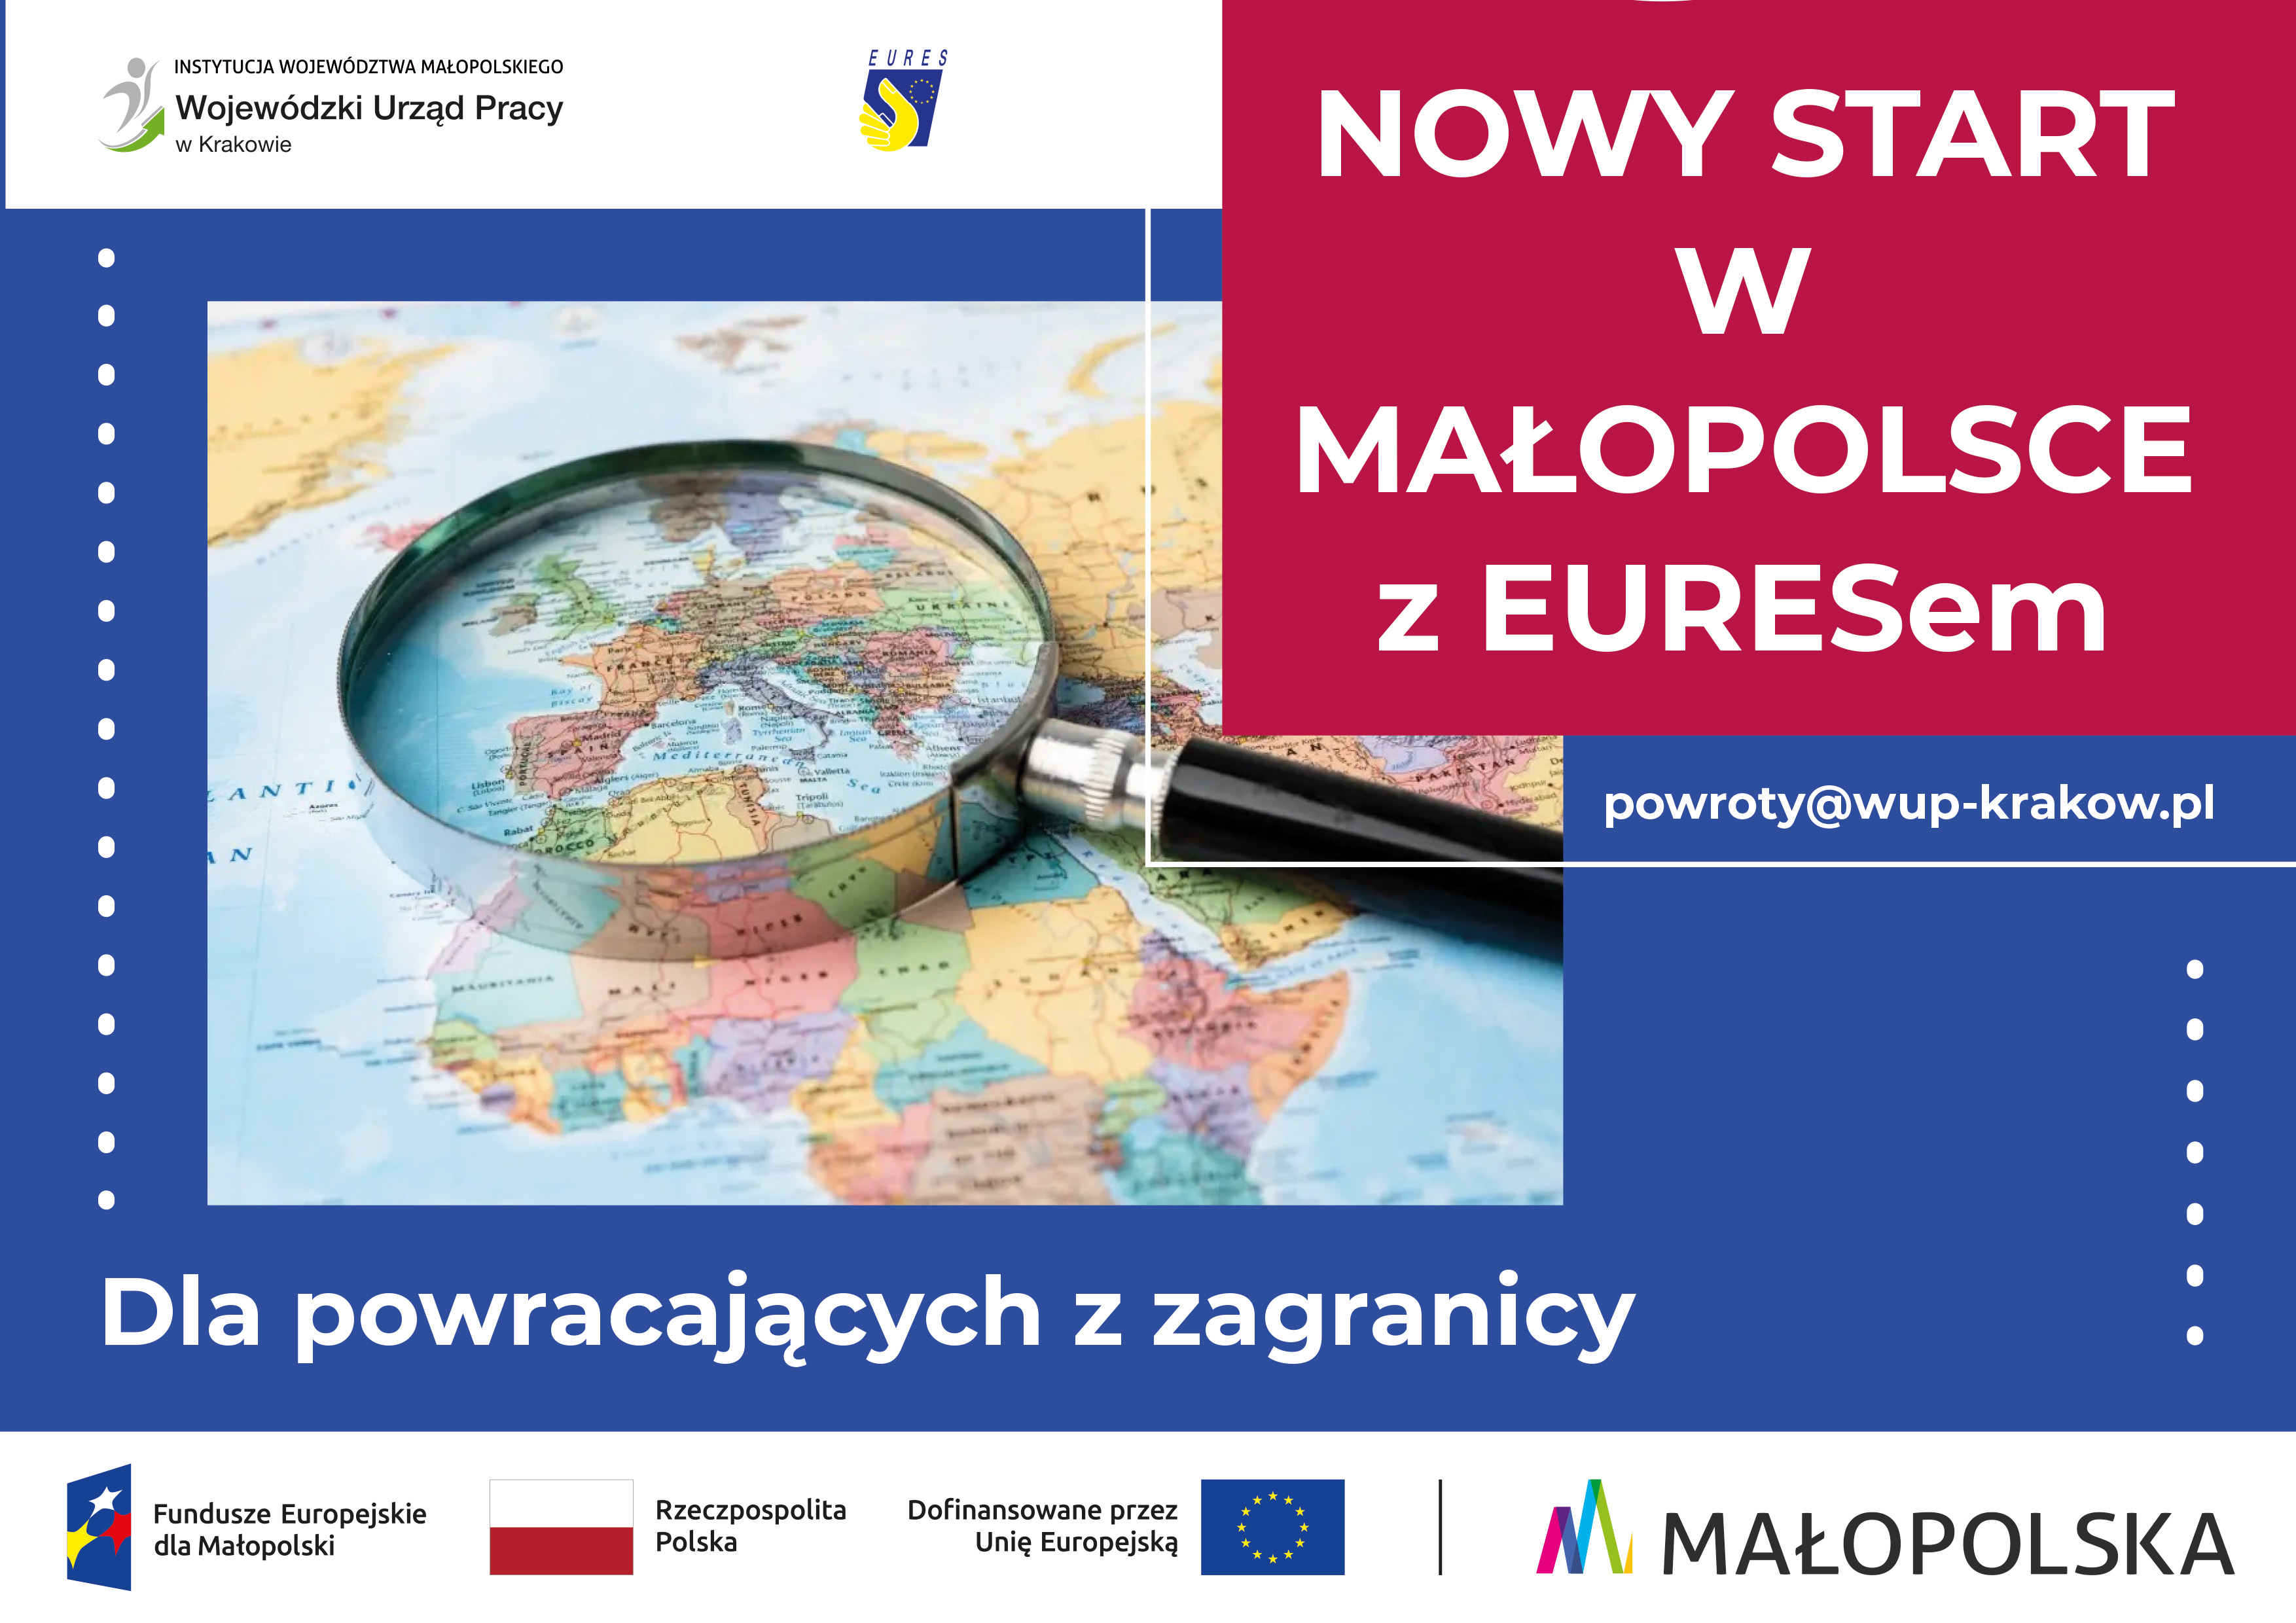 Projekt Nowy start w Małopolsce z EURESem dla osób powracających z zagranicy